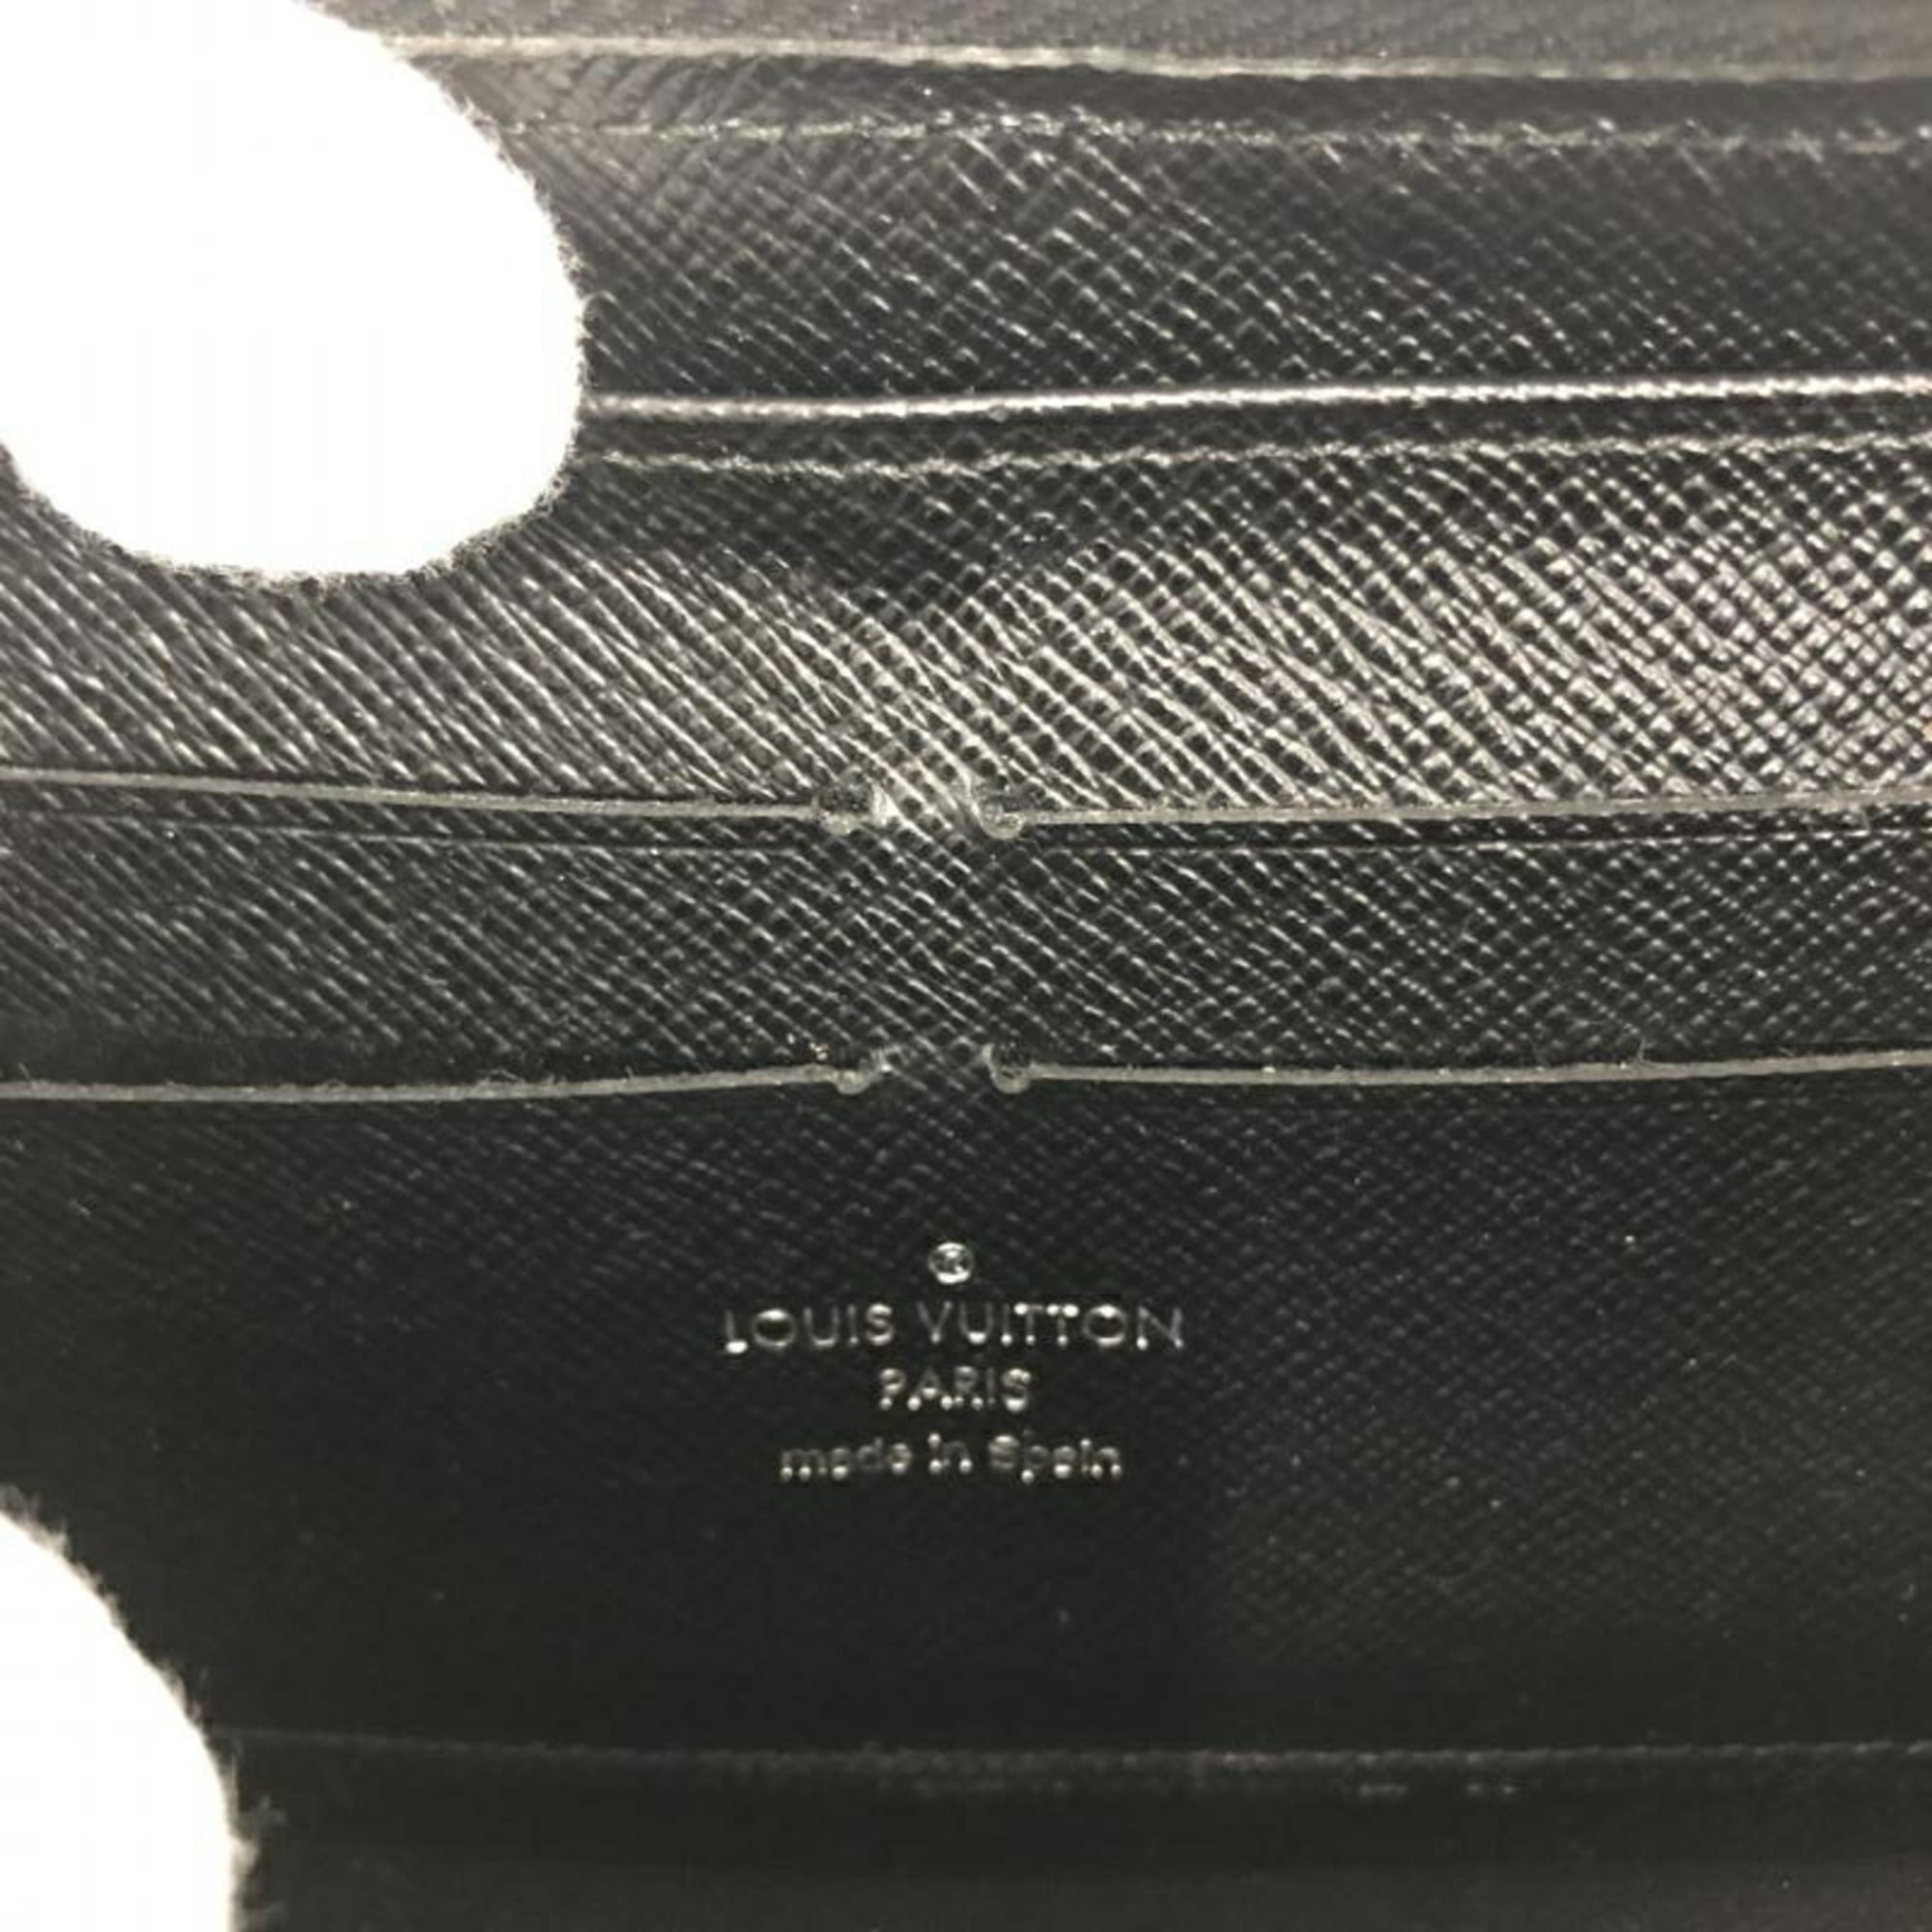 LOUIS VUITTON purse M60072 Zippy wallet Epi Leather black mens